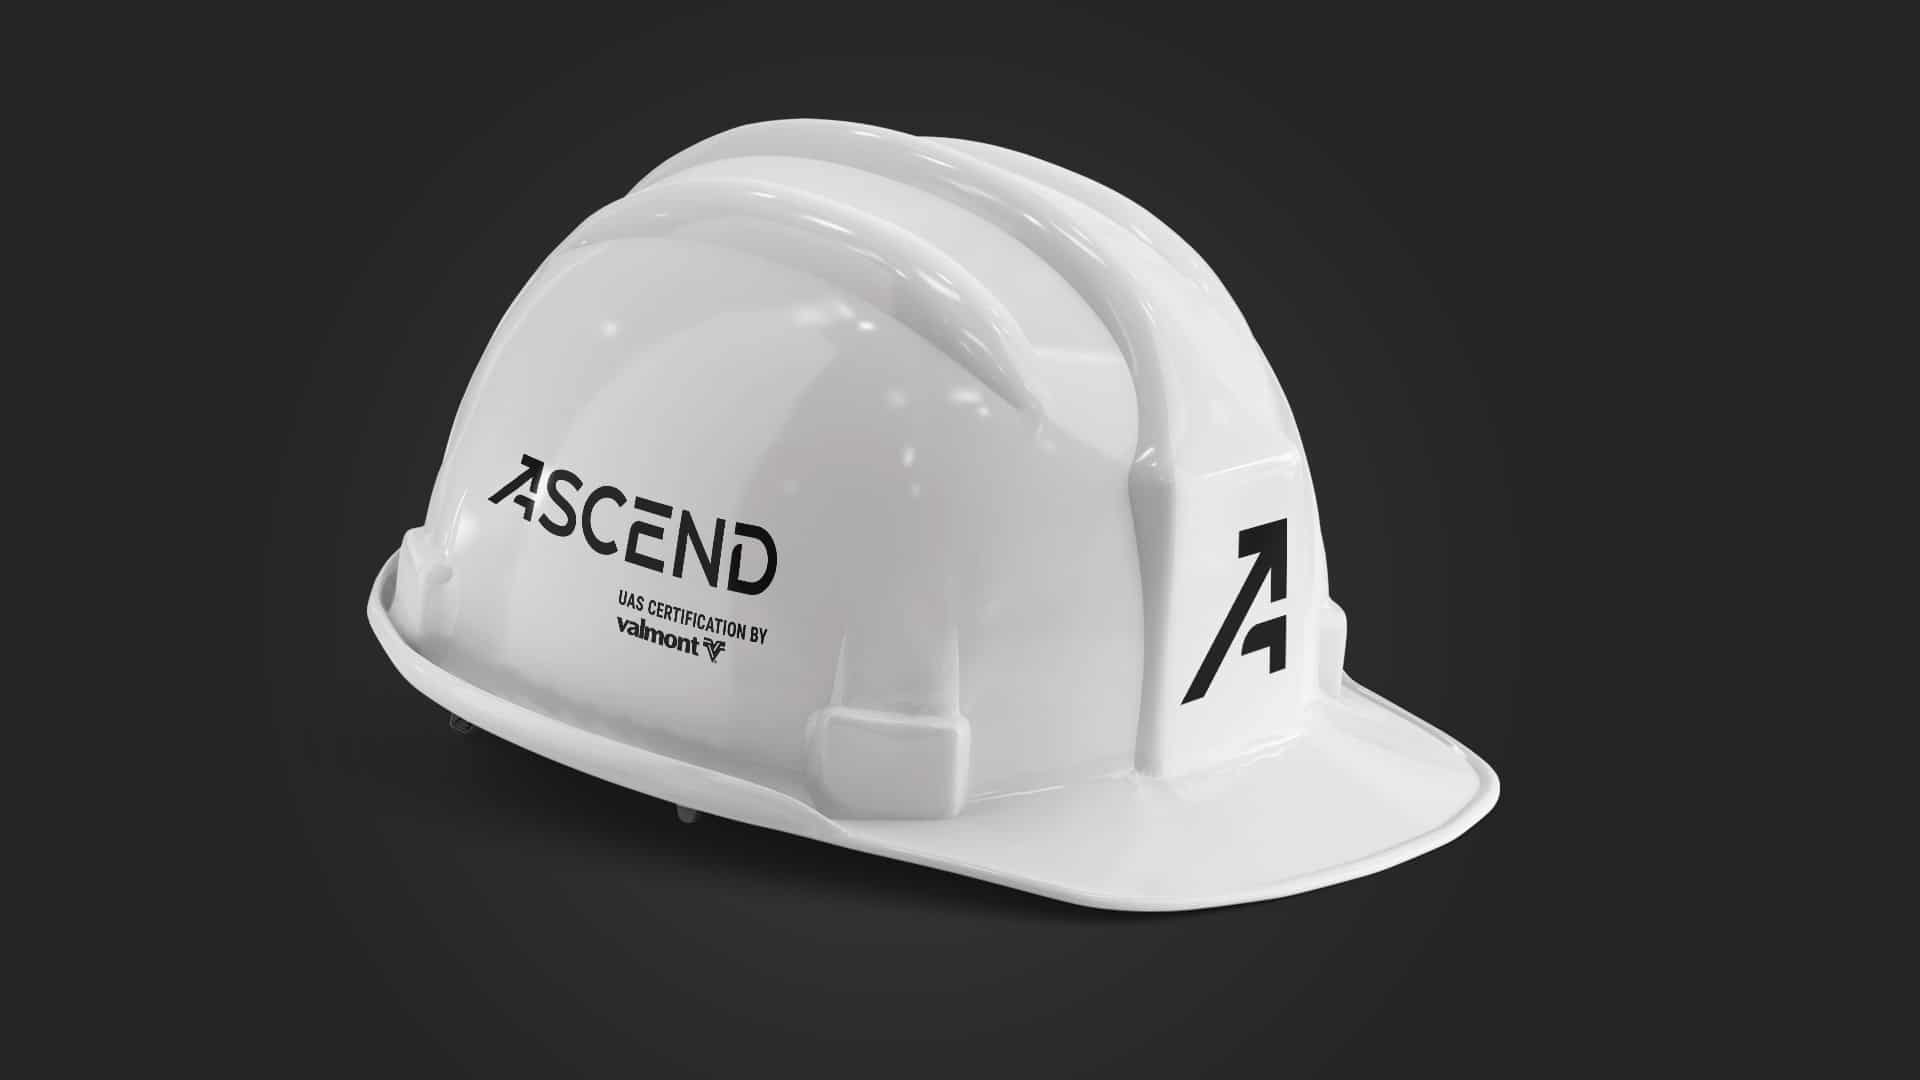 Ascend Branding Omaha: Hard Hat Design